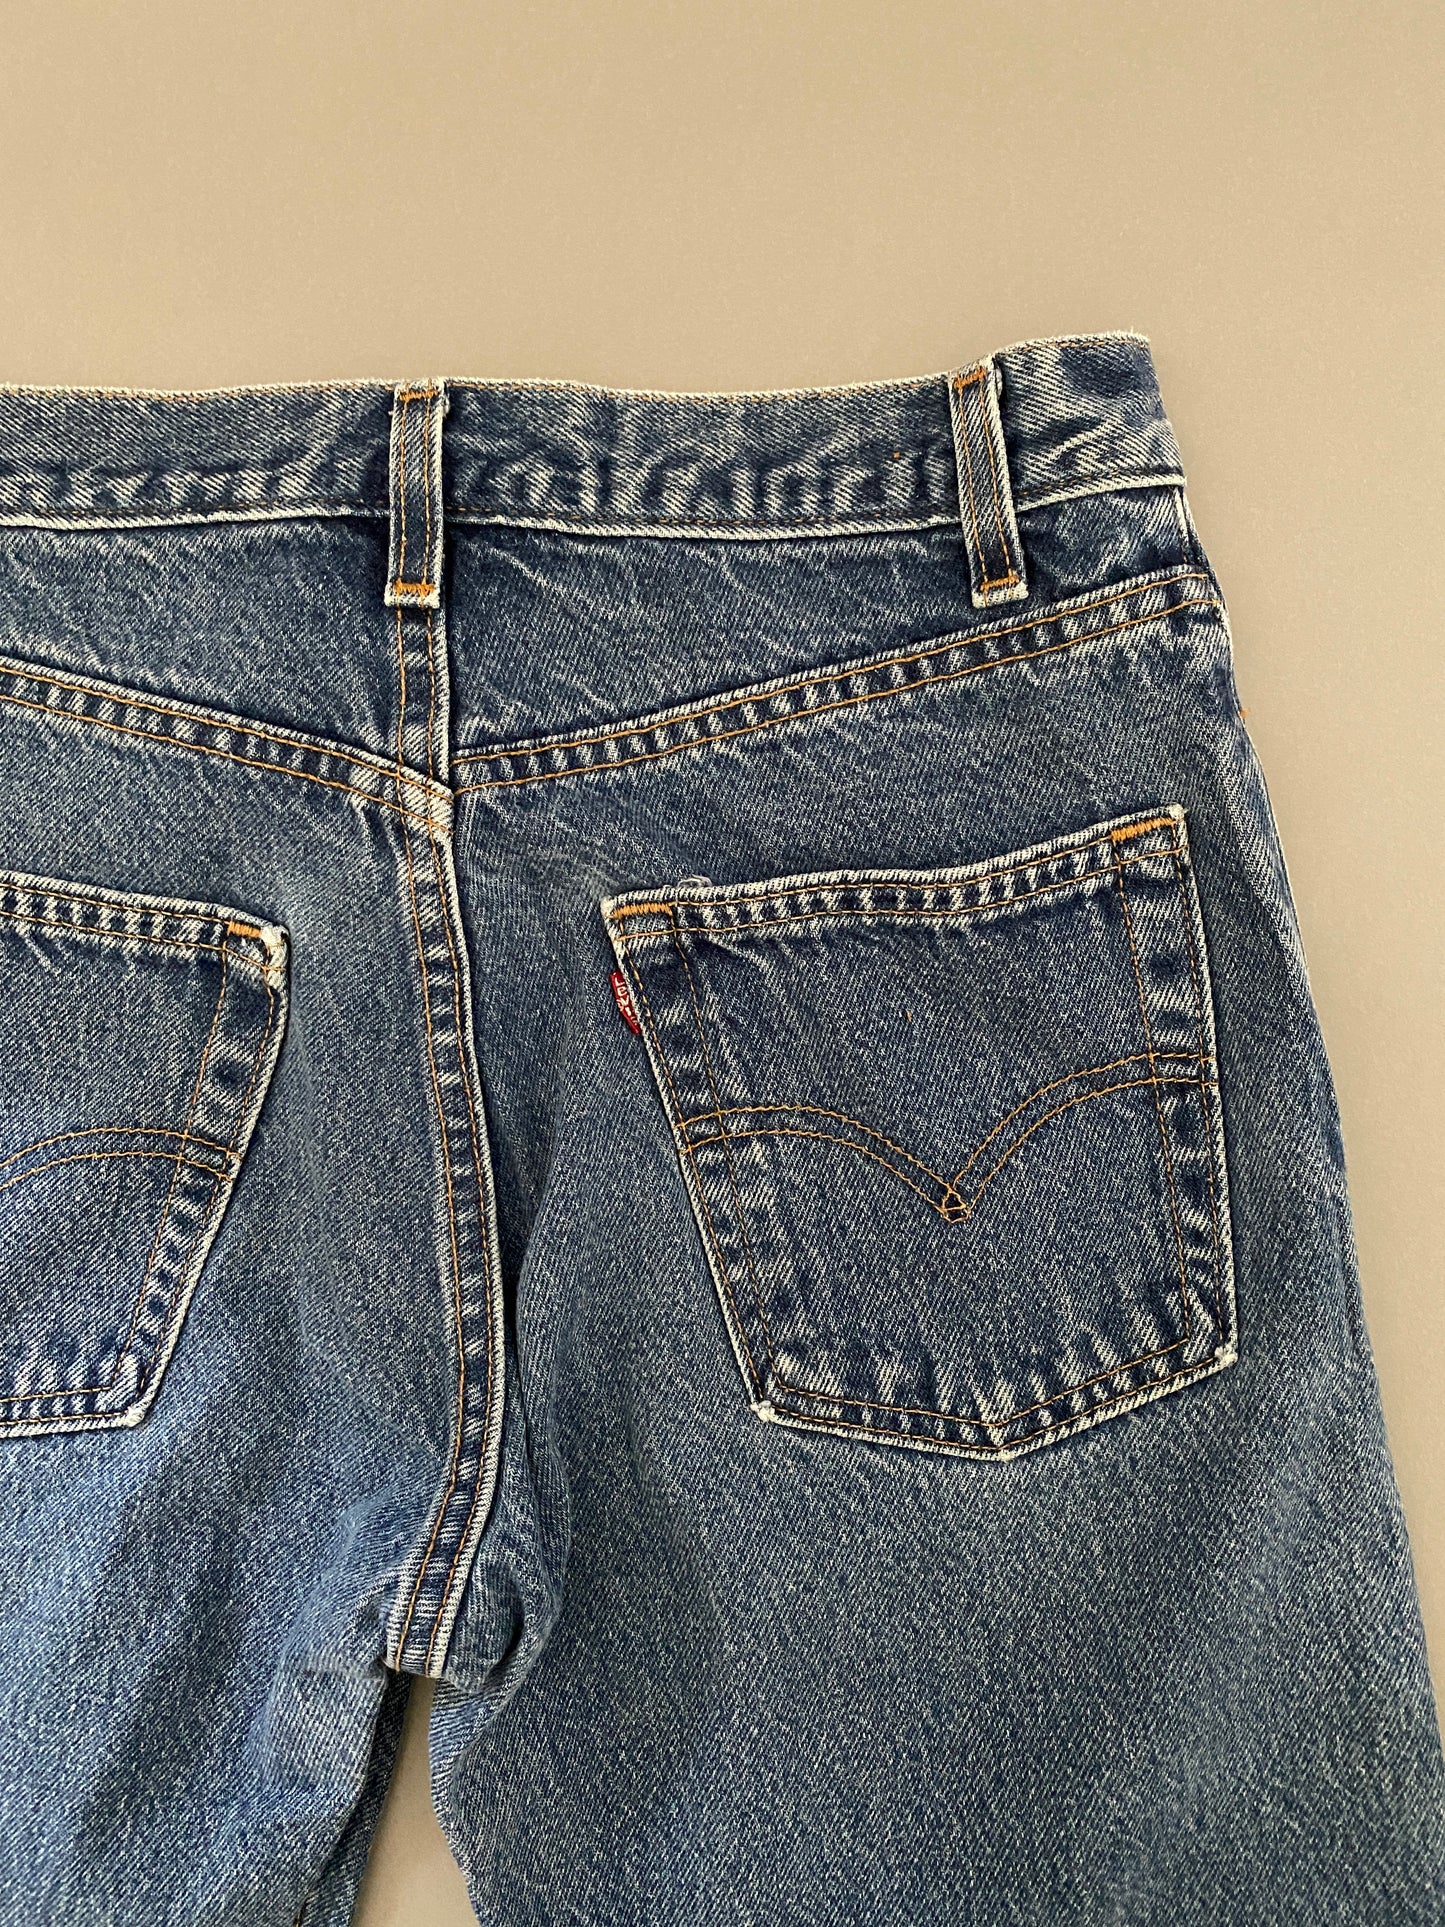 Jeans Levis 554 Vintage